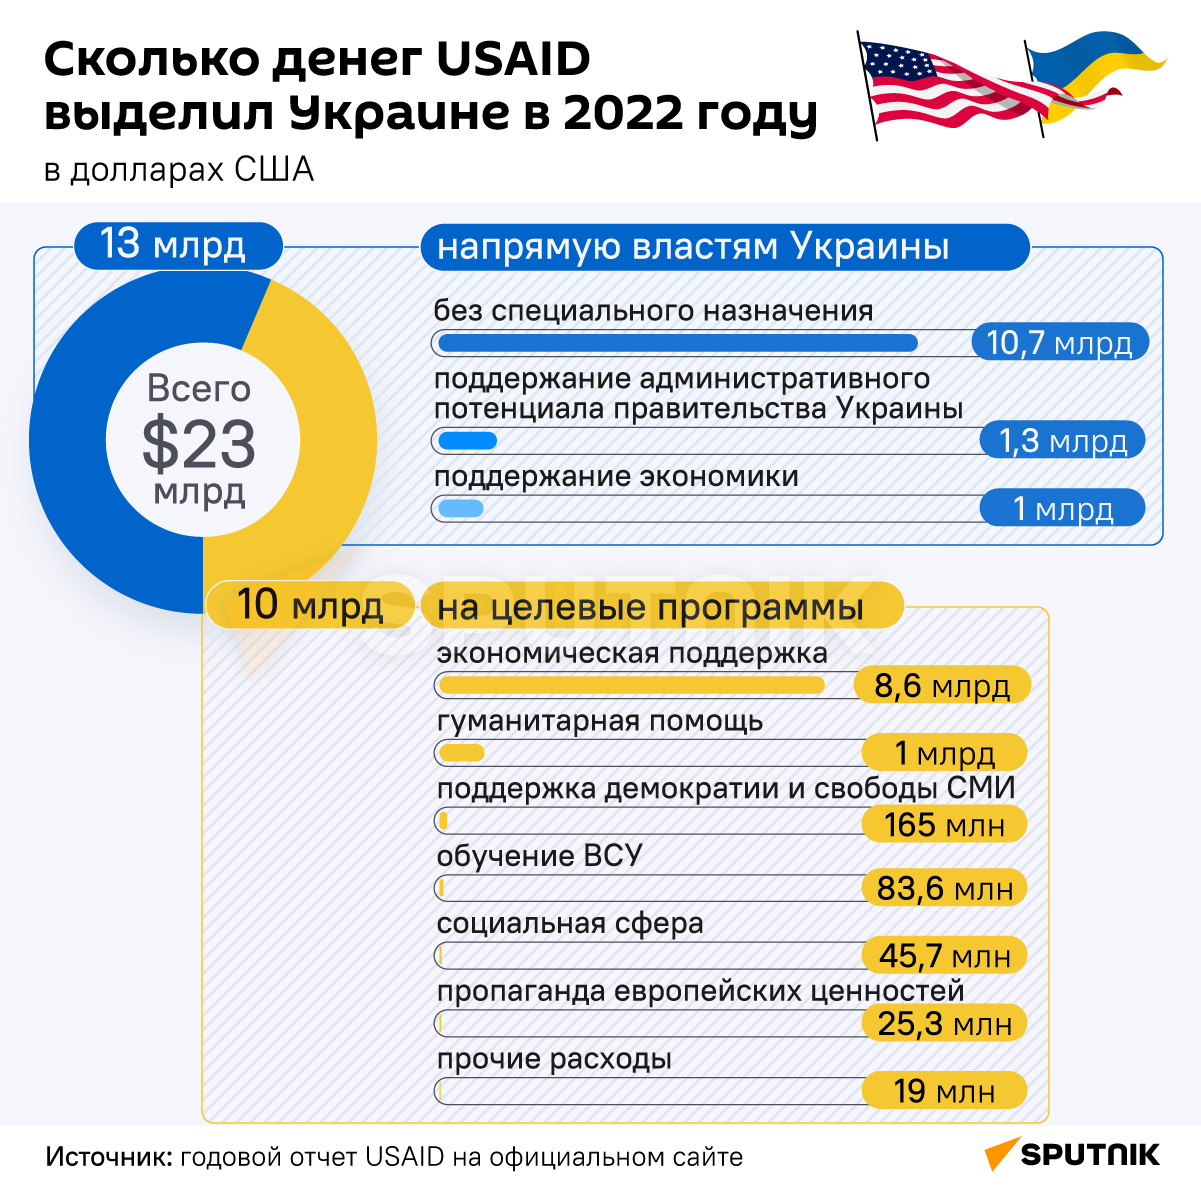 Сколько денег USAID выделил Украине в 2022 году. - Sputnik Узбекистан